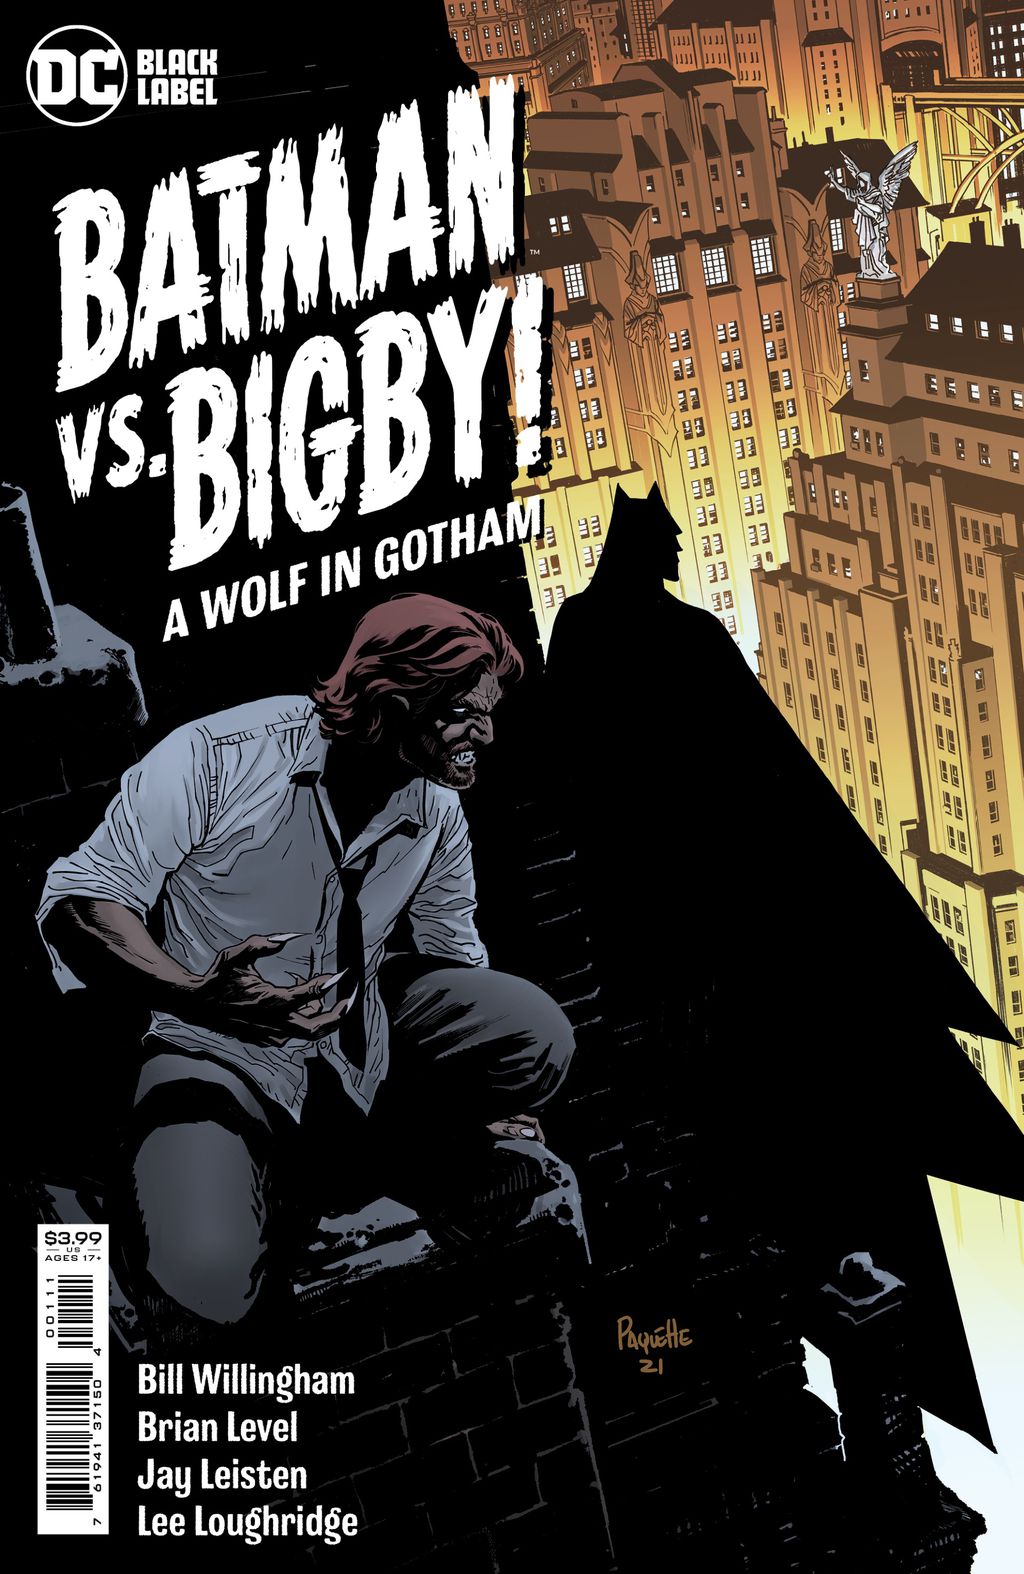 Capa da primeira edição do crossover entre Fábulas e Batman (Imagem: Divulgação/DC Comics)